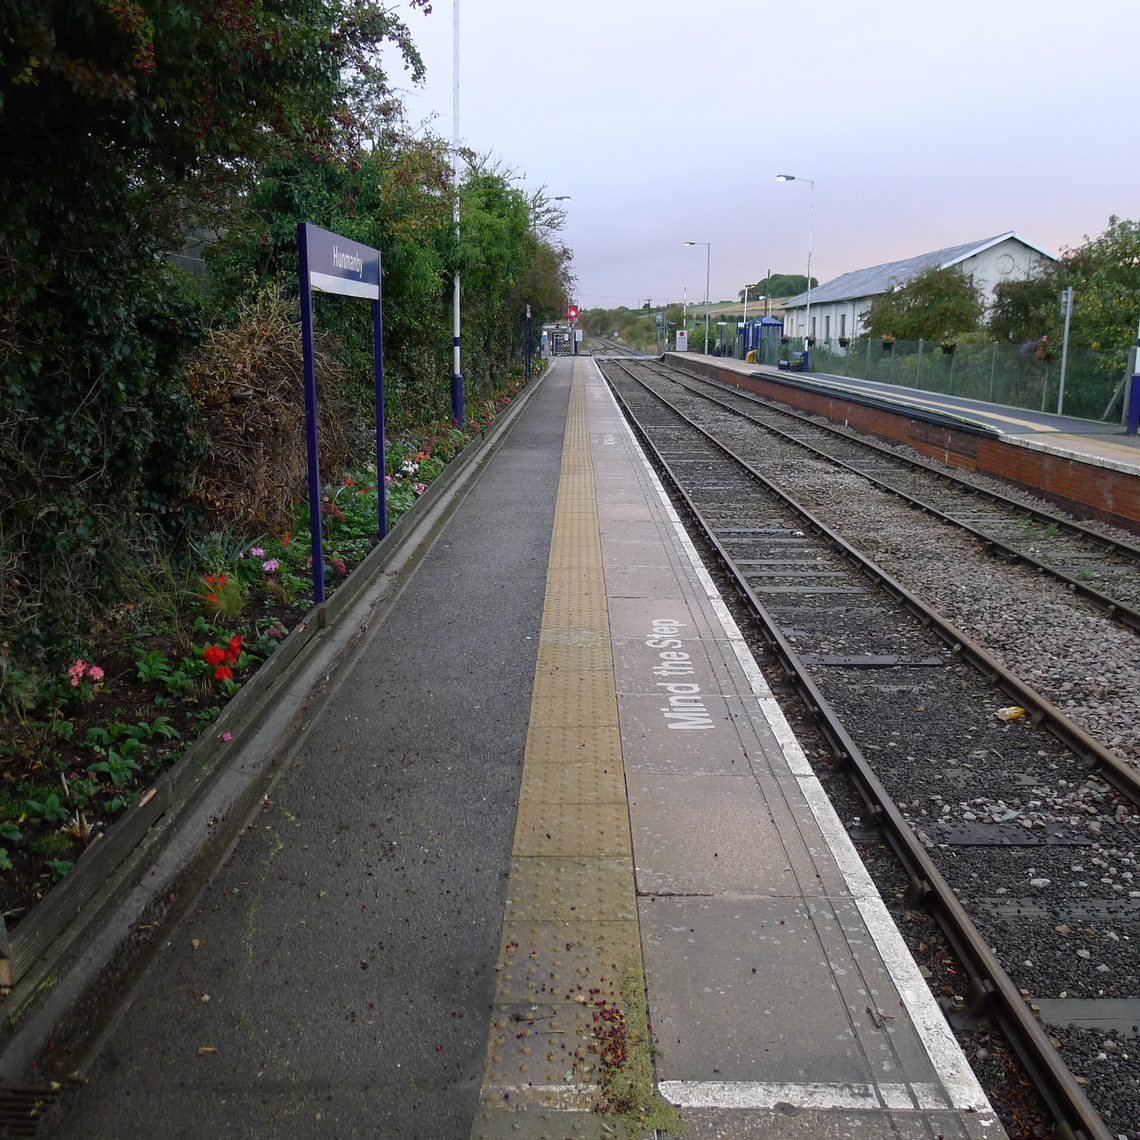 Platform 1 at Hunmanby looking towards Bridlington